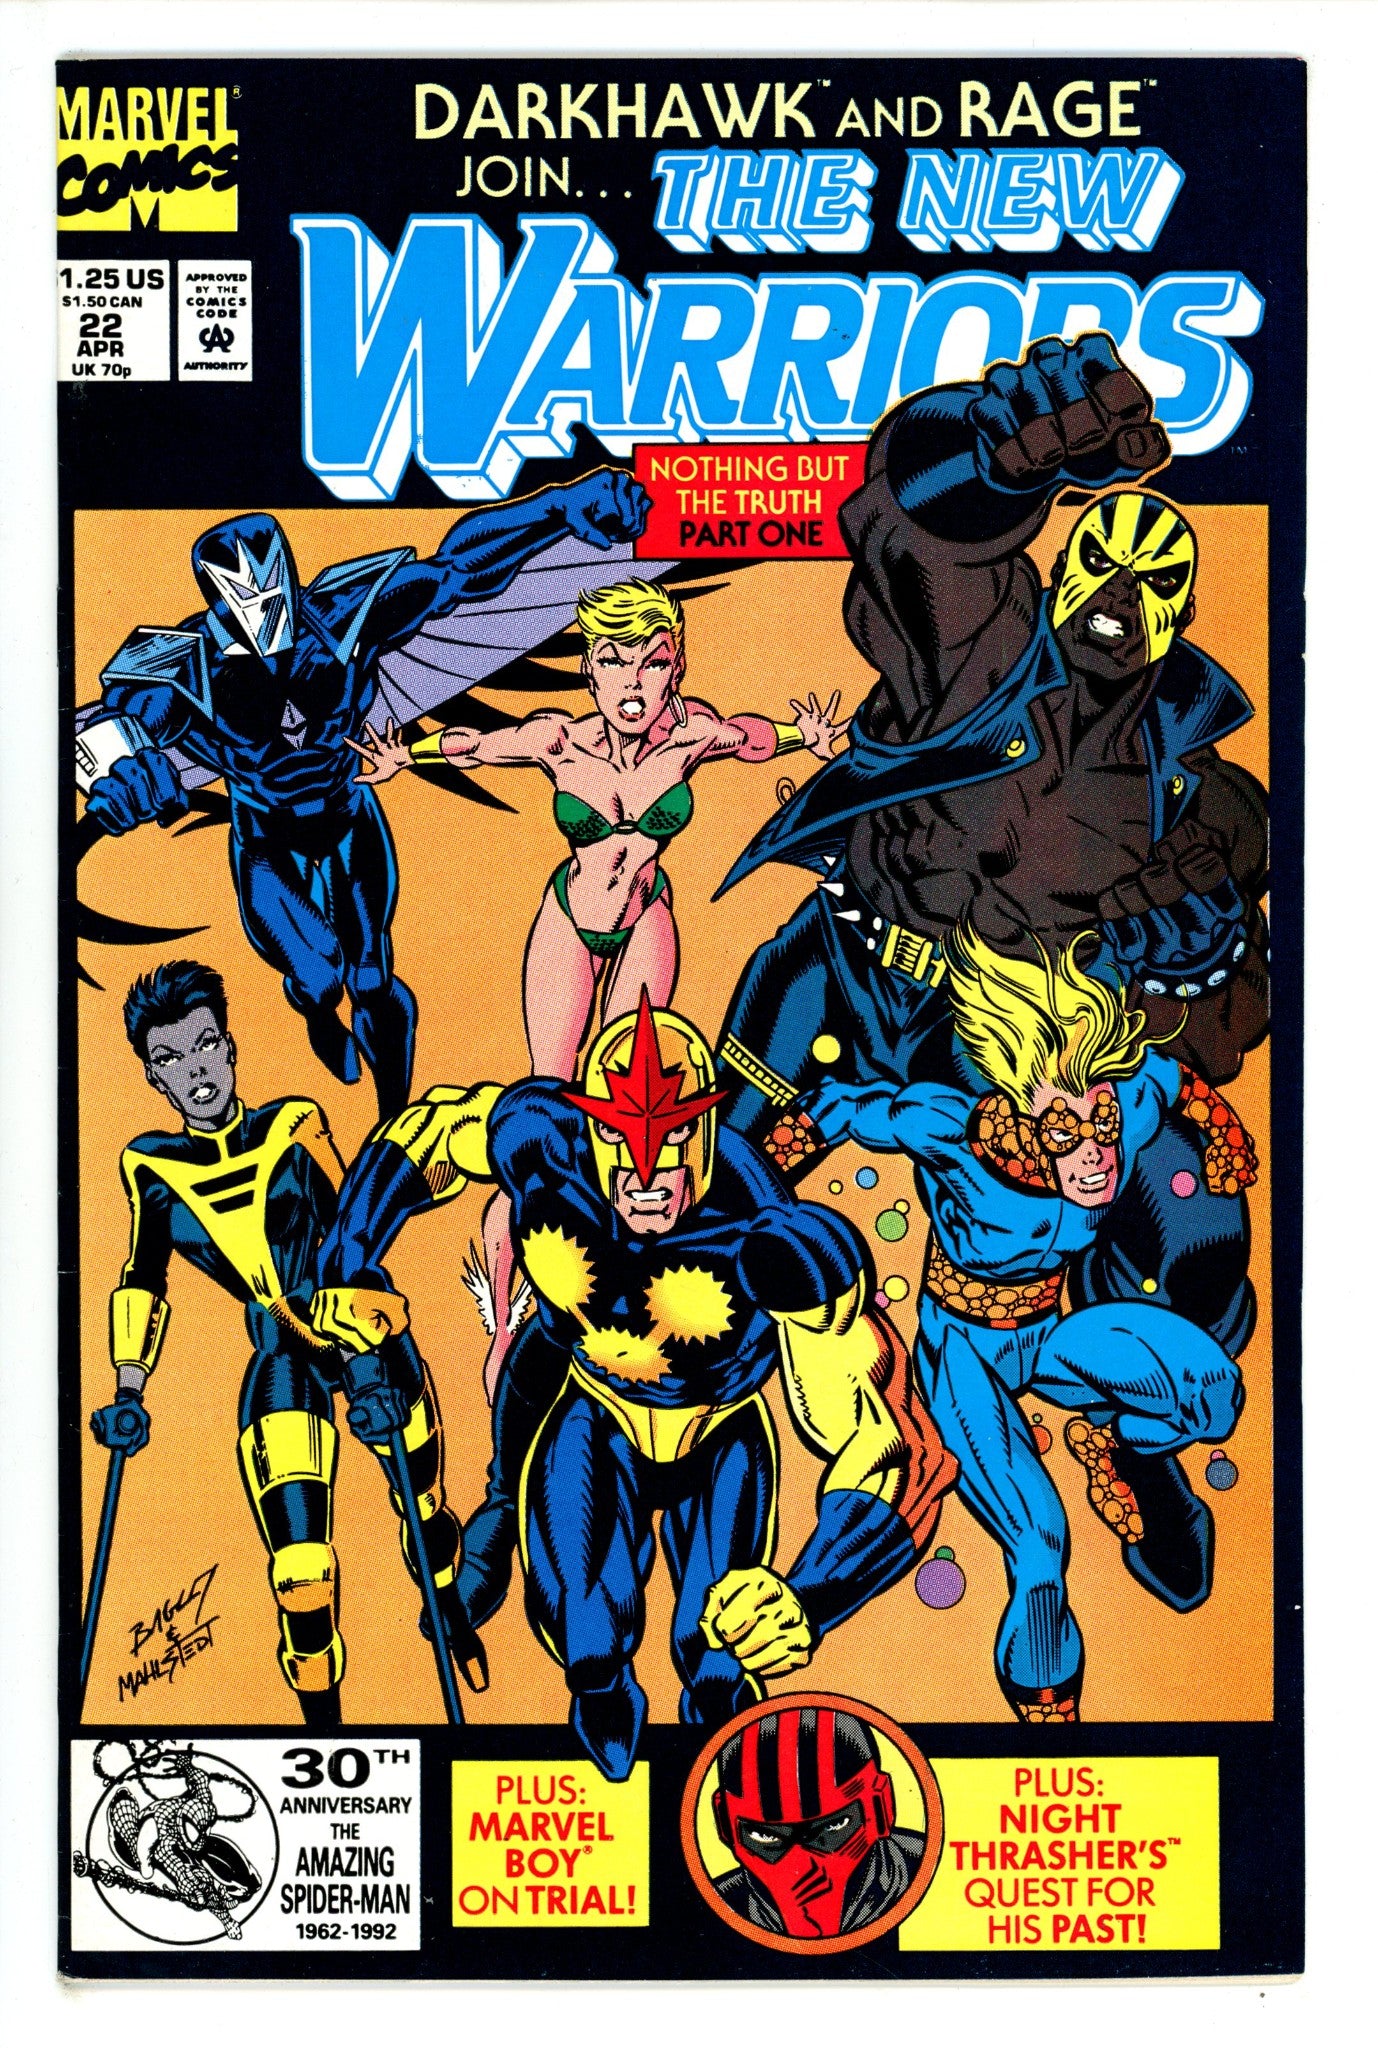 The New Warriors Vol 1 22 (1992)